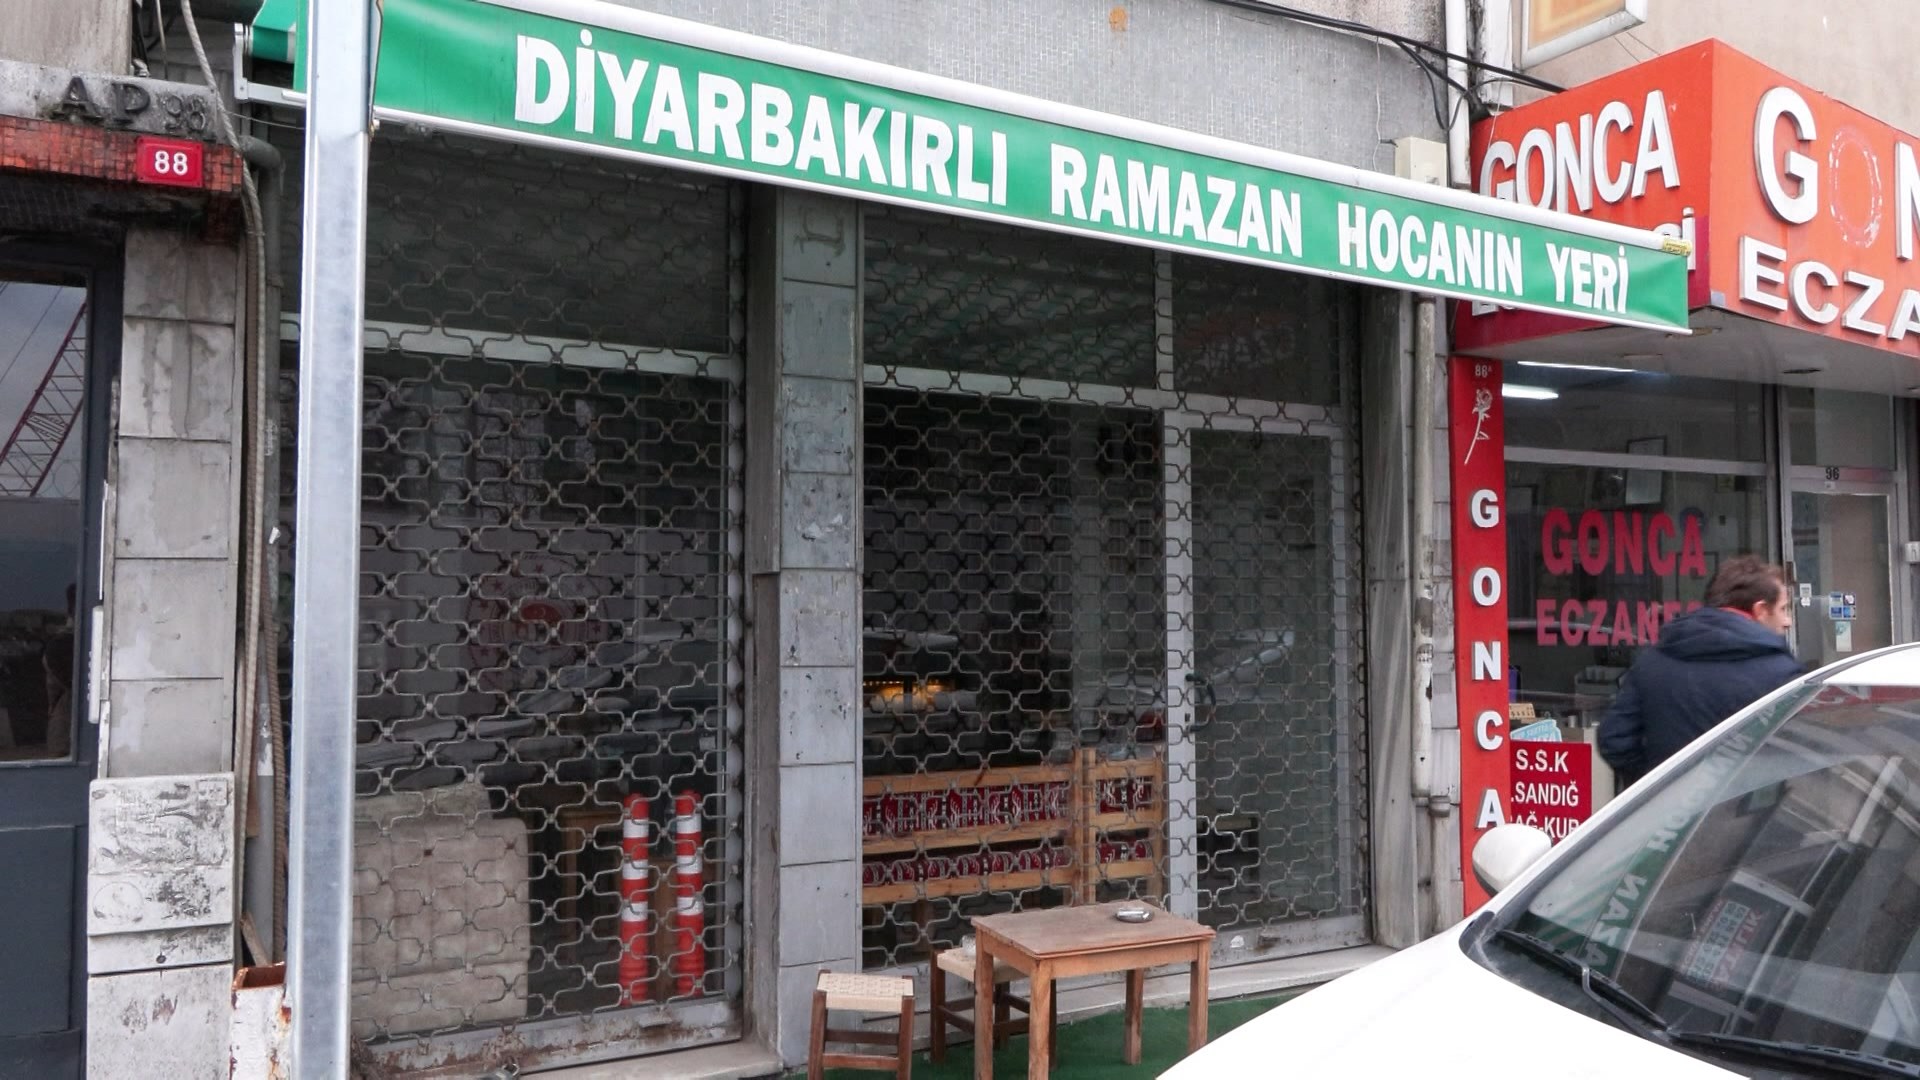 genis-haber-diyarbakirli-ramazan-hoca-olduruldu_4211_dhaphoto2_1